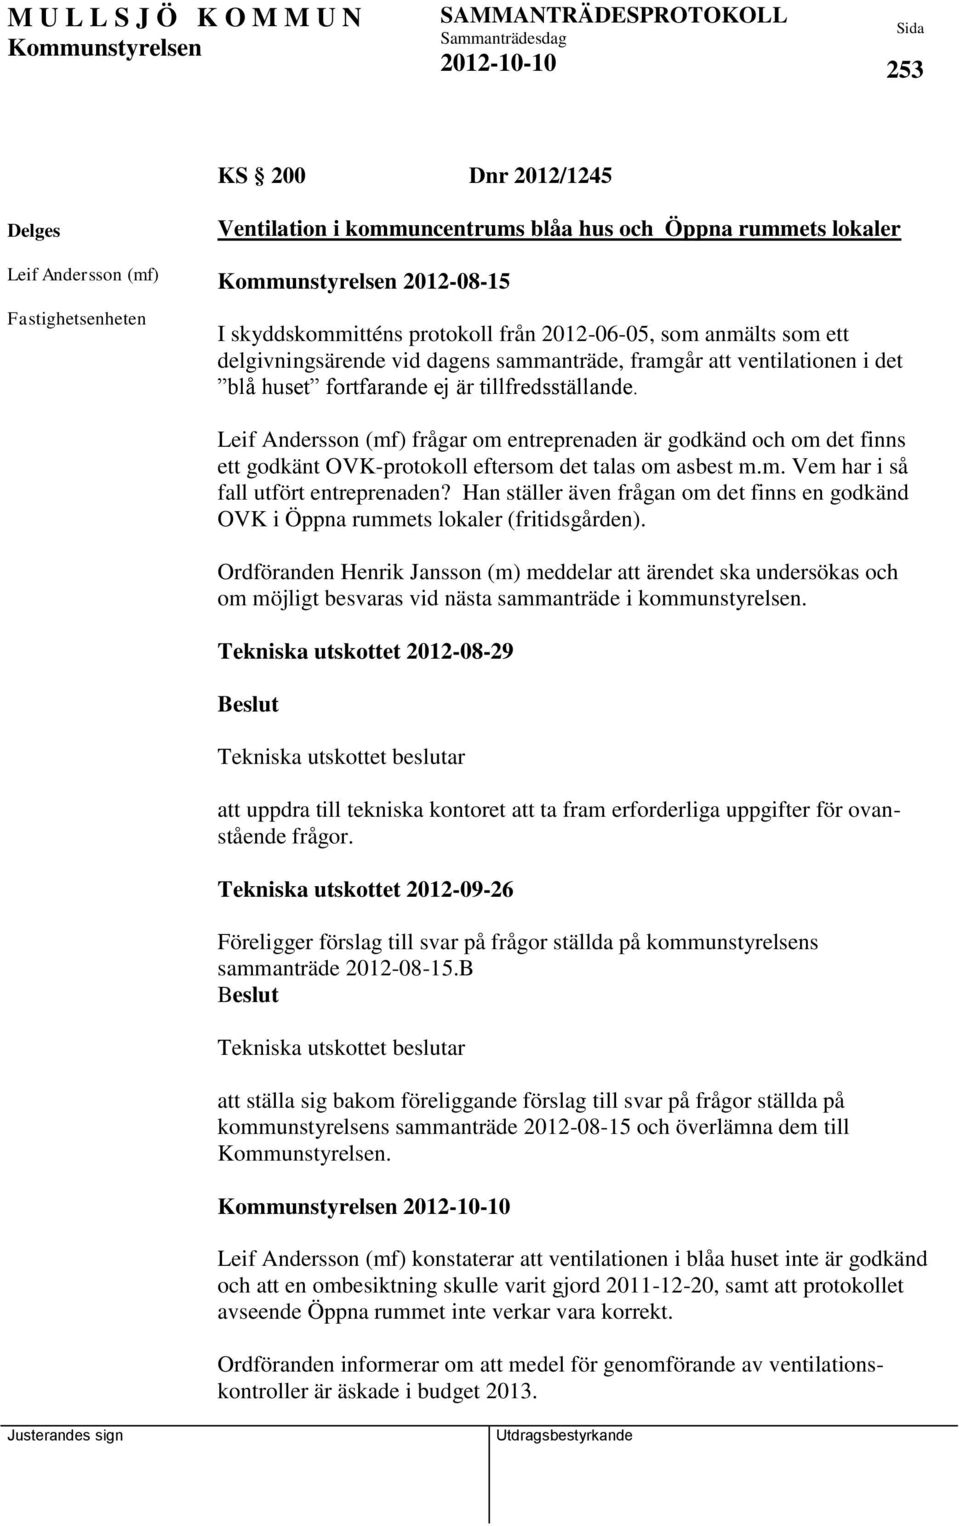 Leif Andersson (mf) frågar om entreprenaden är godkänd och om det finns ett godkänt OVK-protokoll eftersom det talas om asbest m.m. Vem har i så fall utfört entreprenaden?